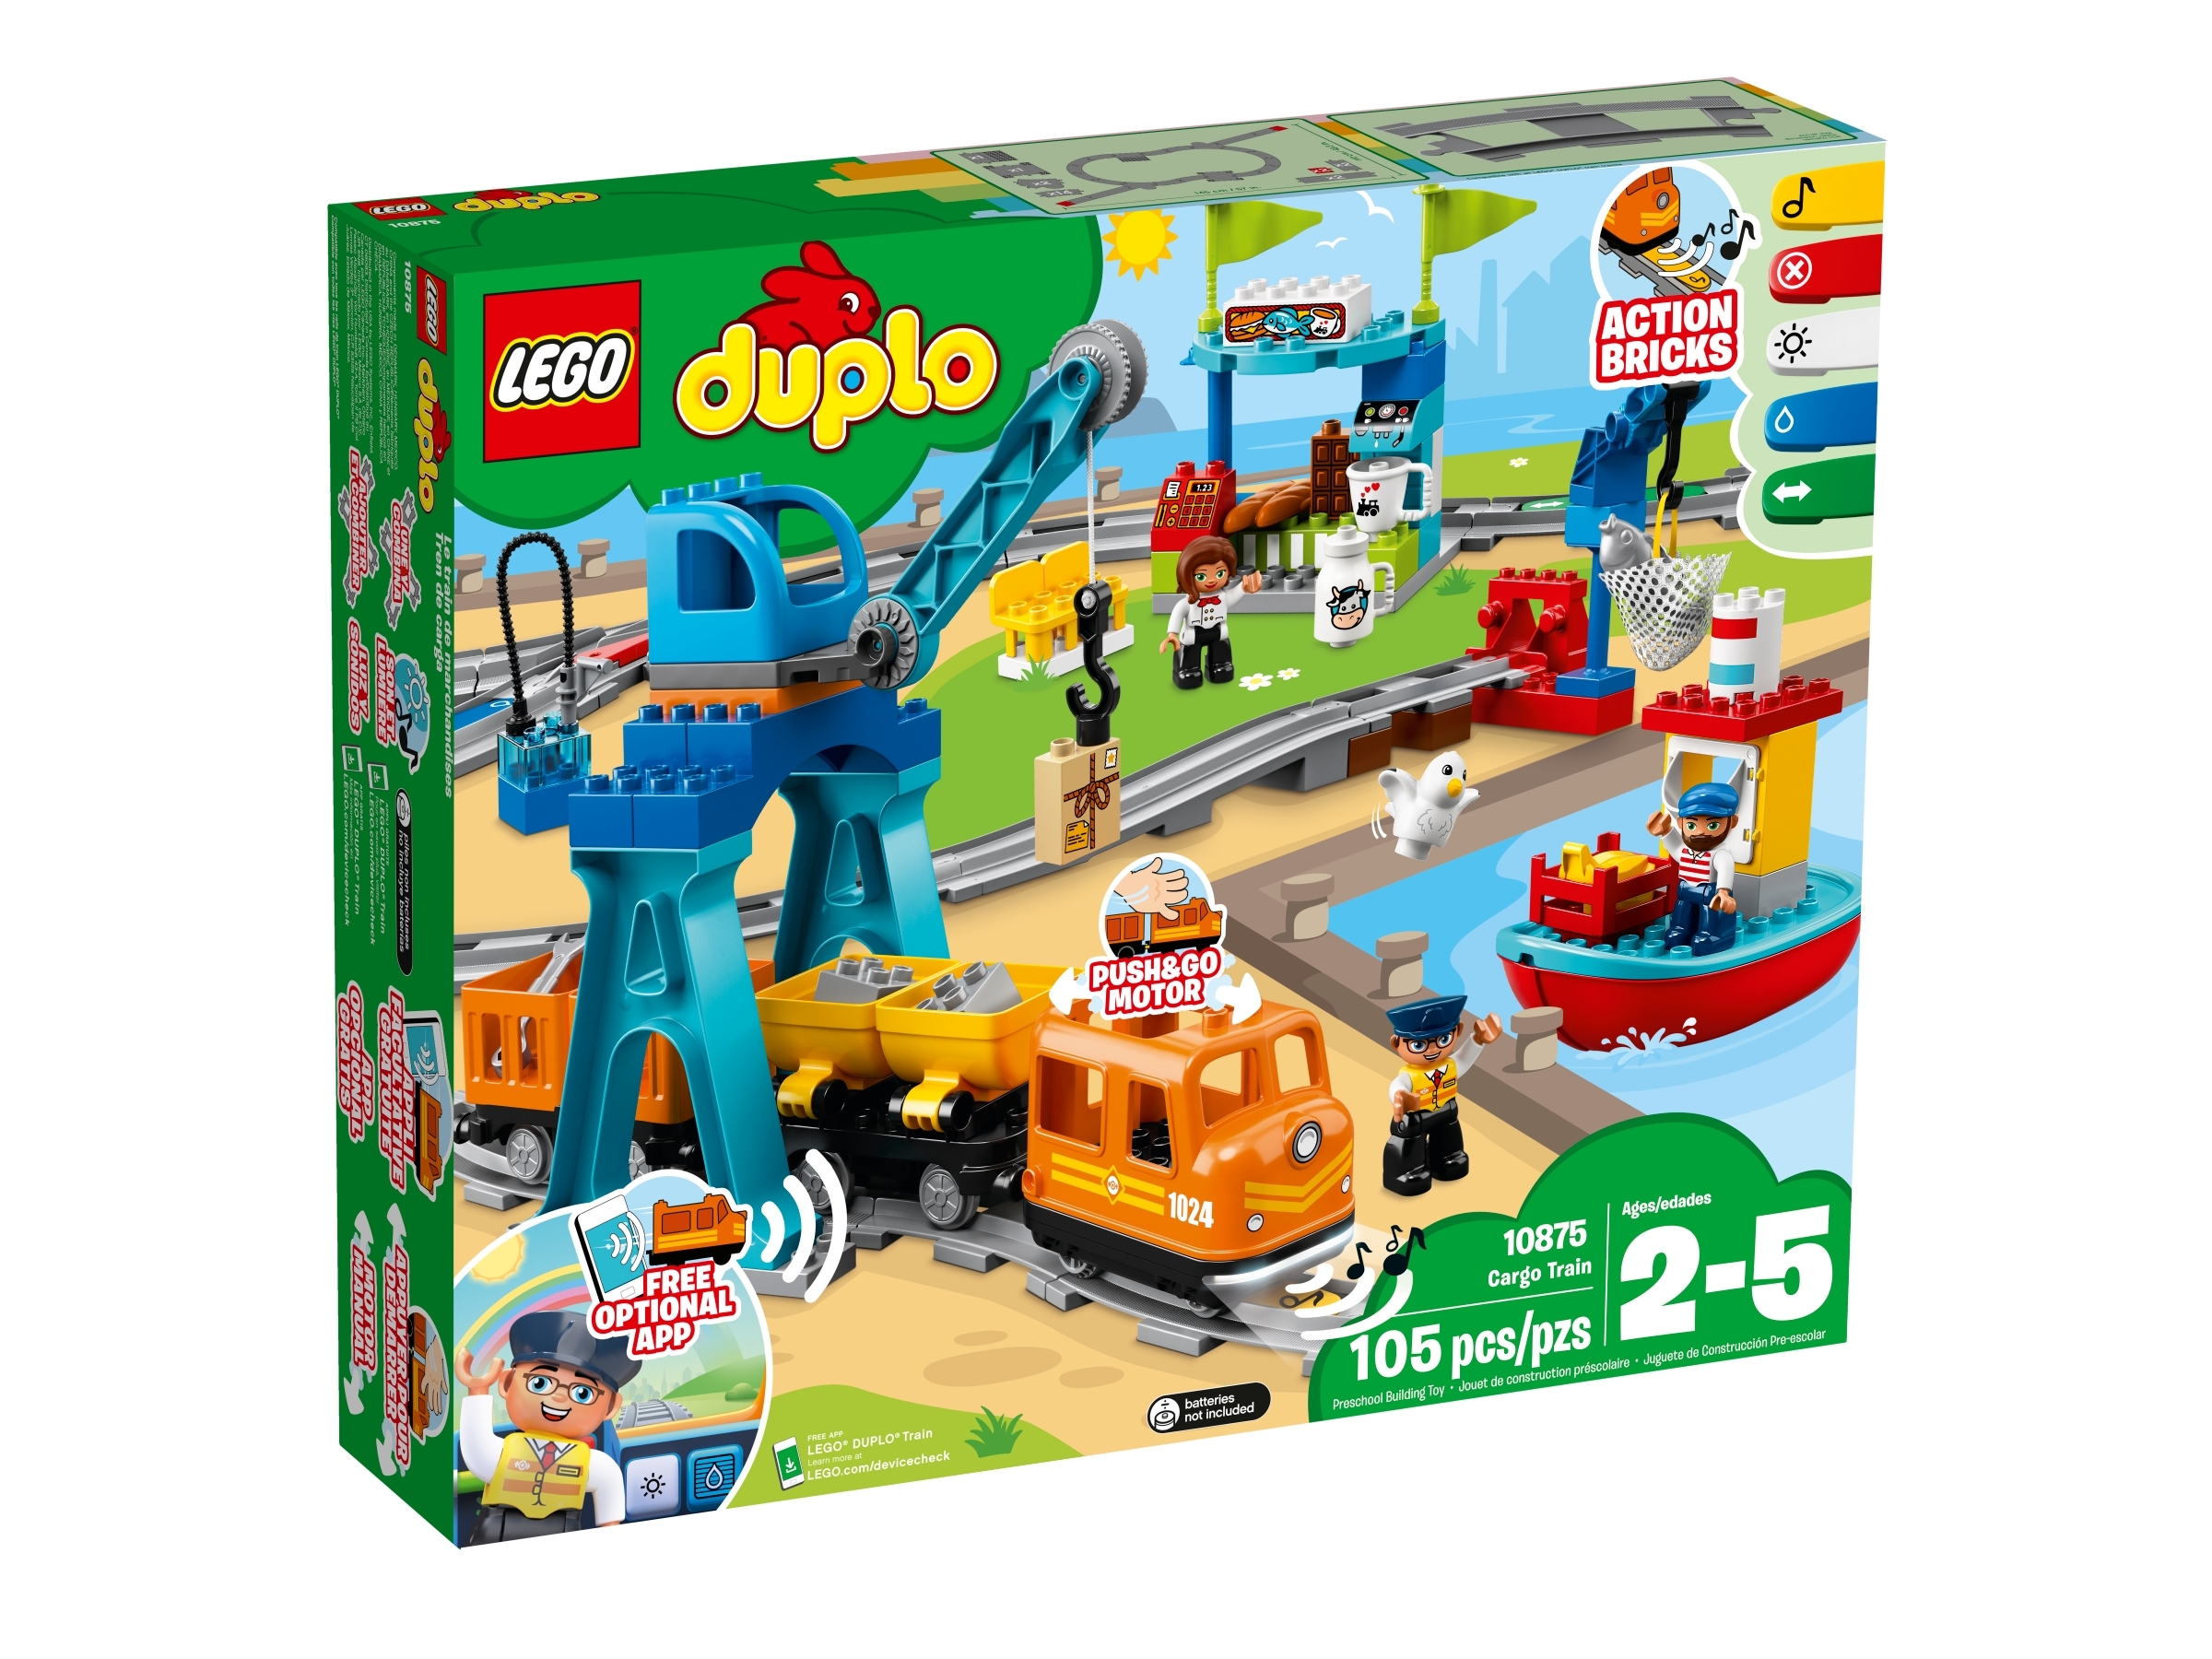 duplo lego sets for boys